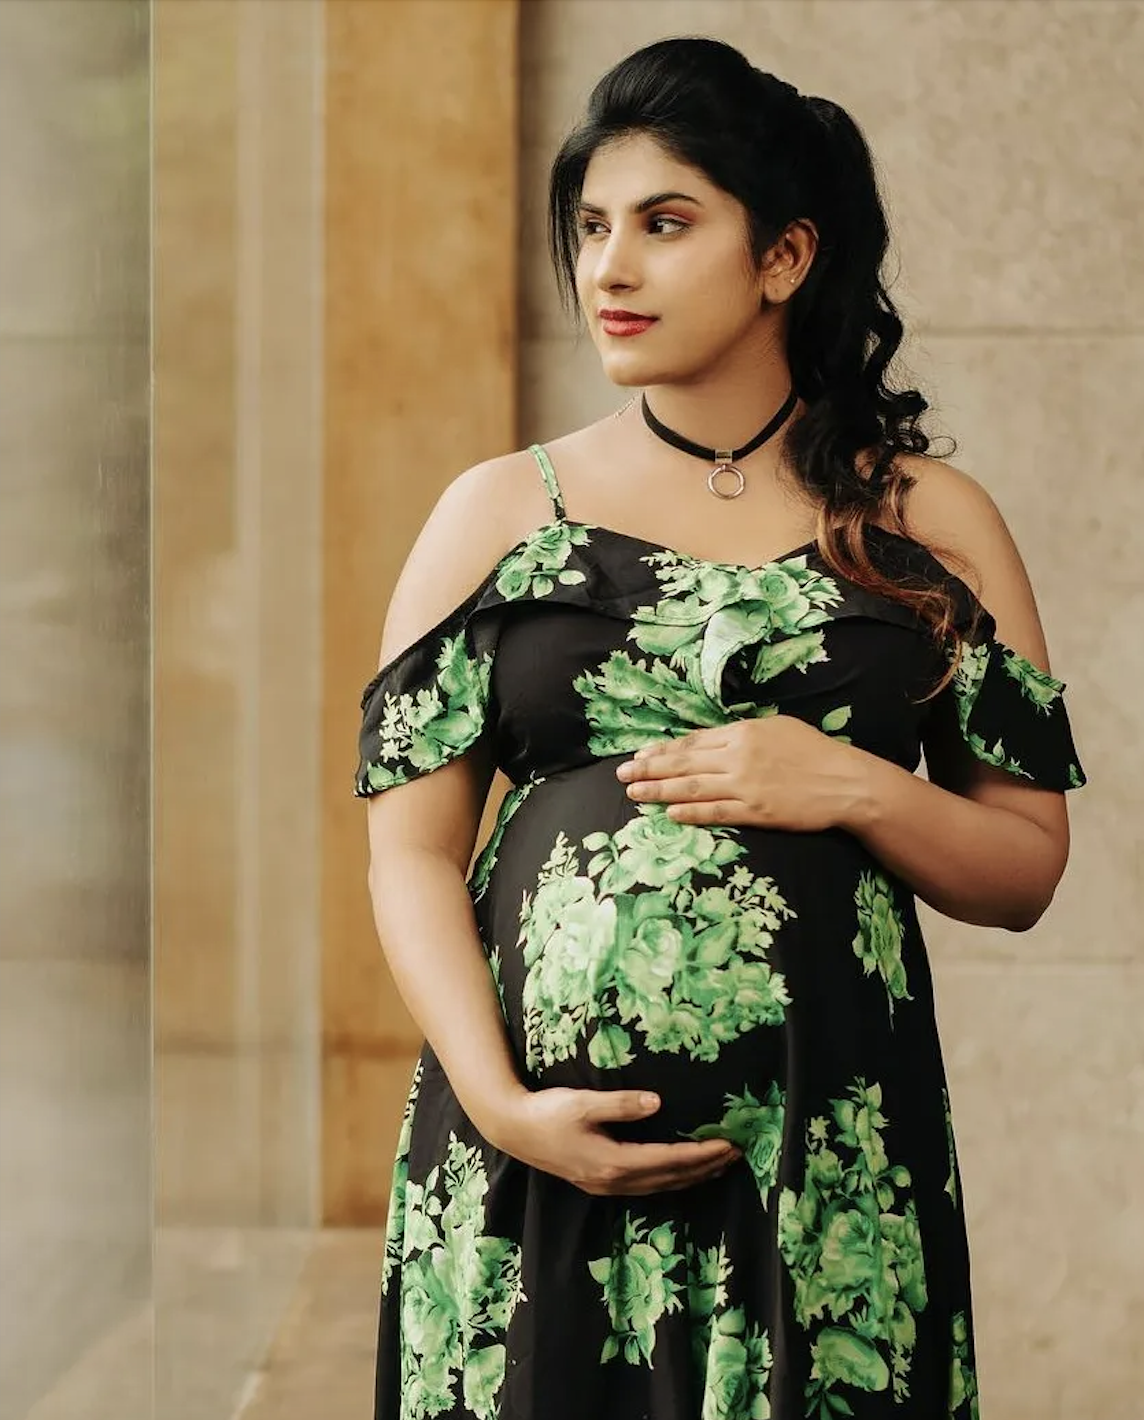 Беременная индийская актриса скончалась в возрасте 35 лет от сердечного приступа: ребенок в реанимации